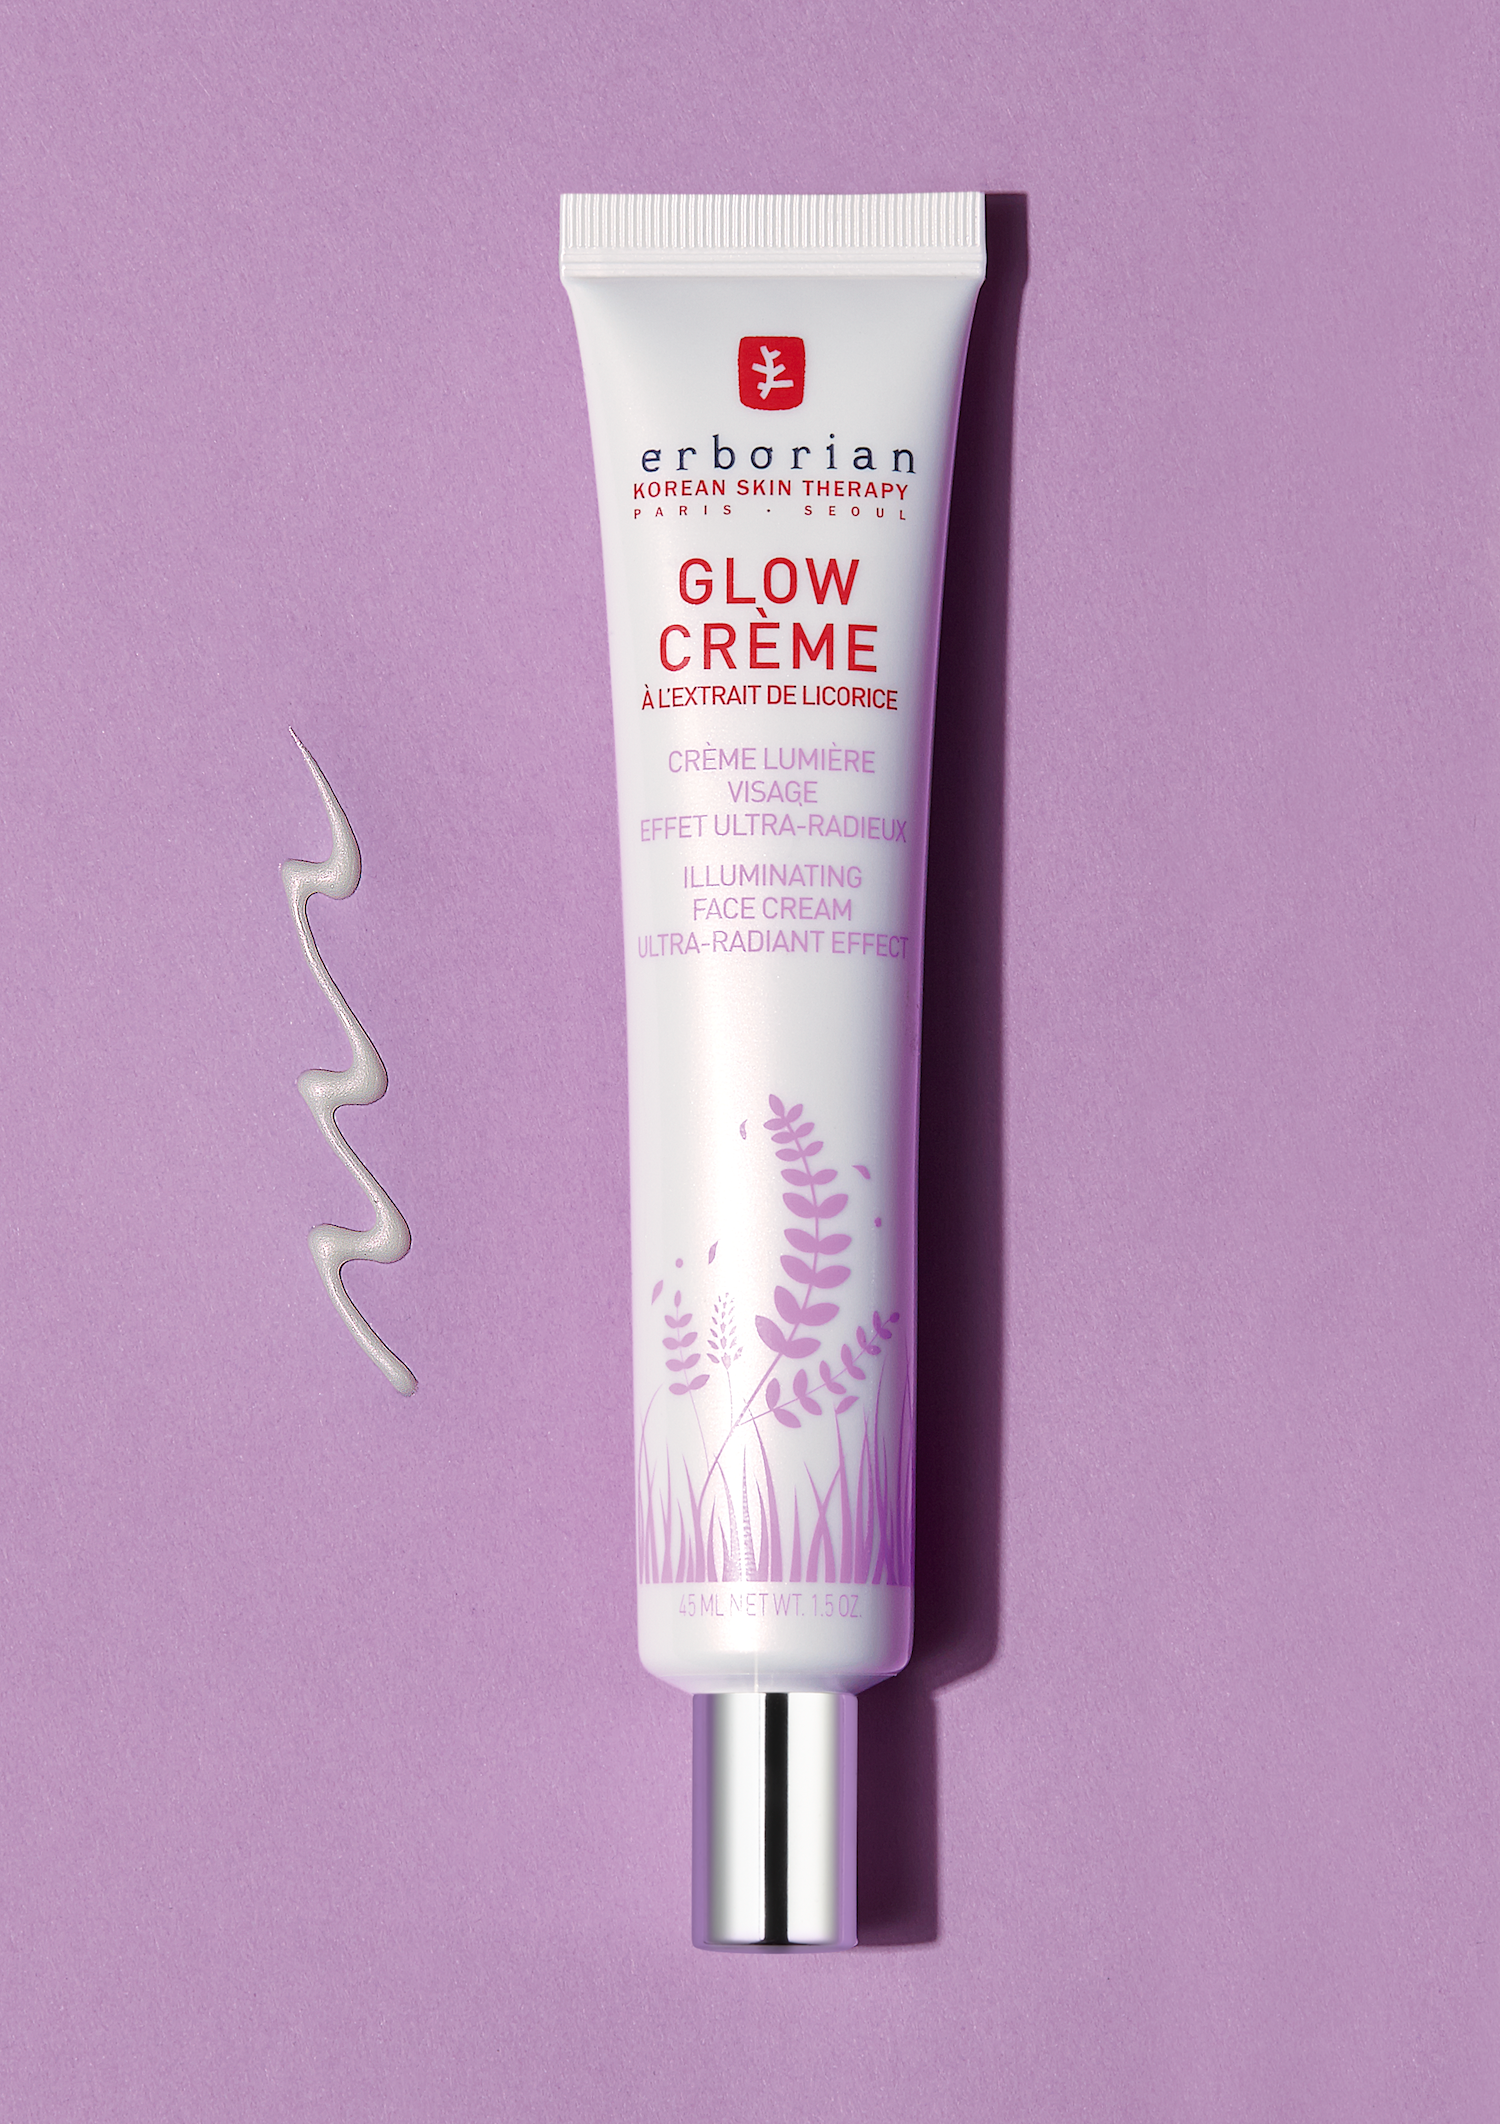 Erborian Glow Creme крем с эффектом фотошопа придающий лицу свежий и отдохнувший вид | Glamour